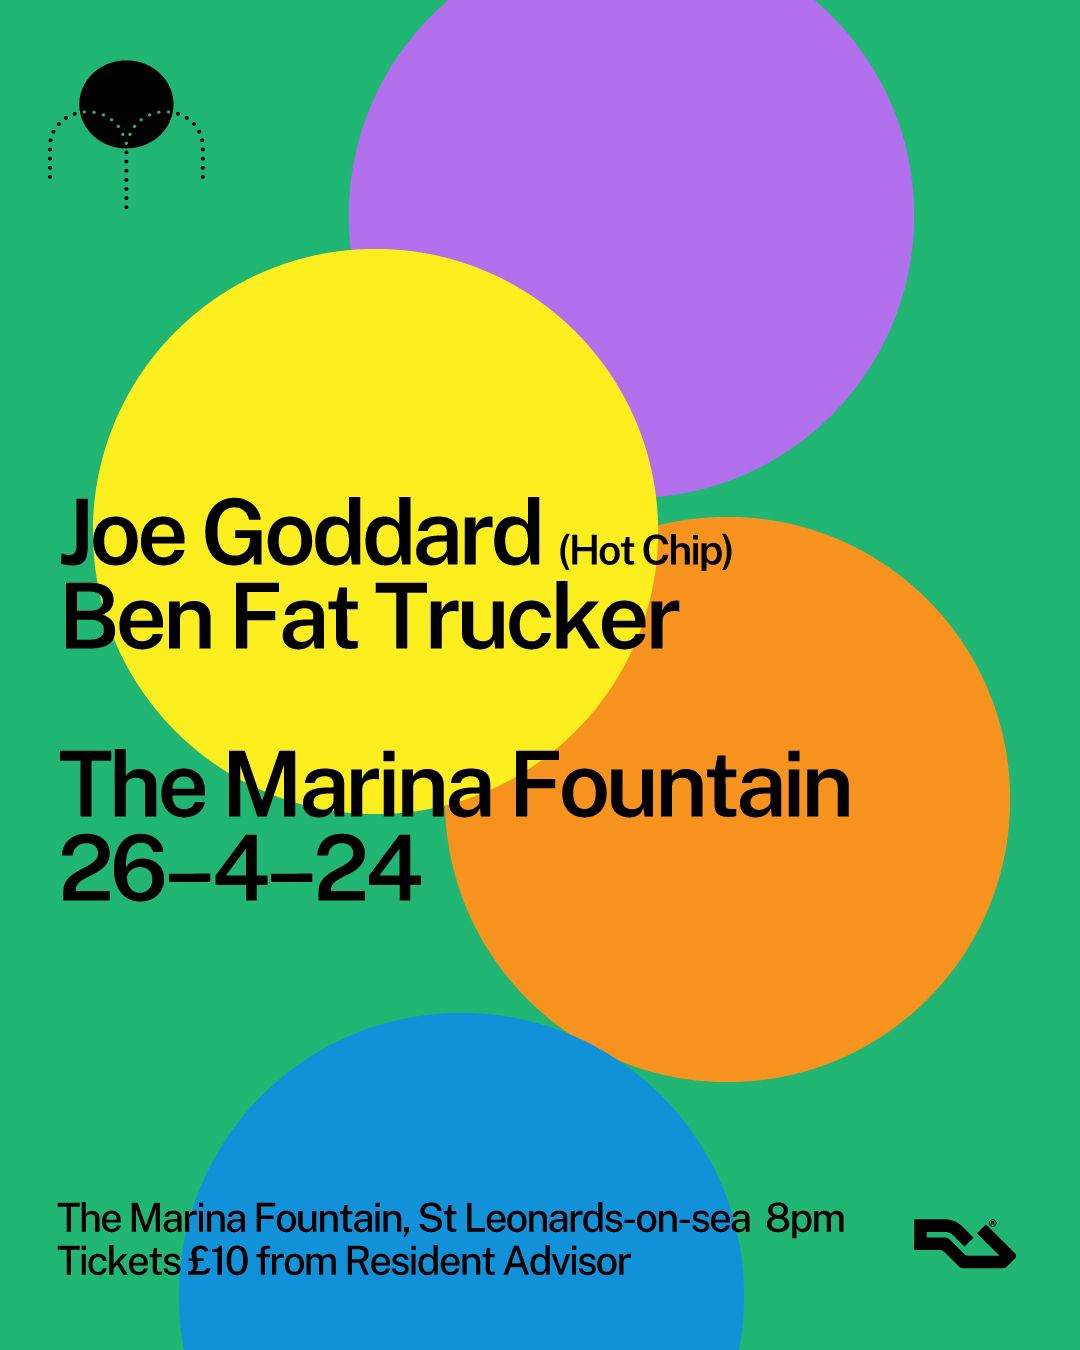 Joe Goddard (hot chip) at The Marina Fountain - Página frontal